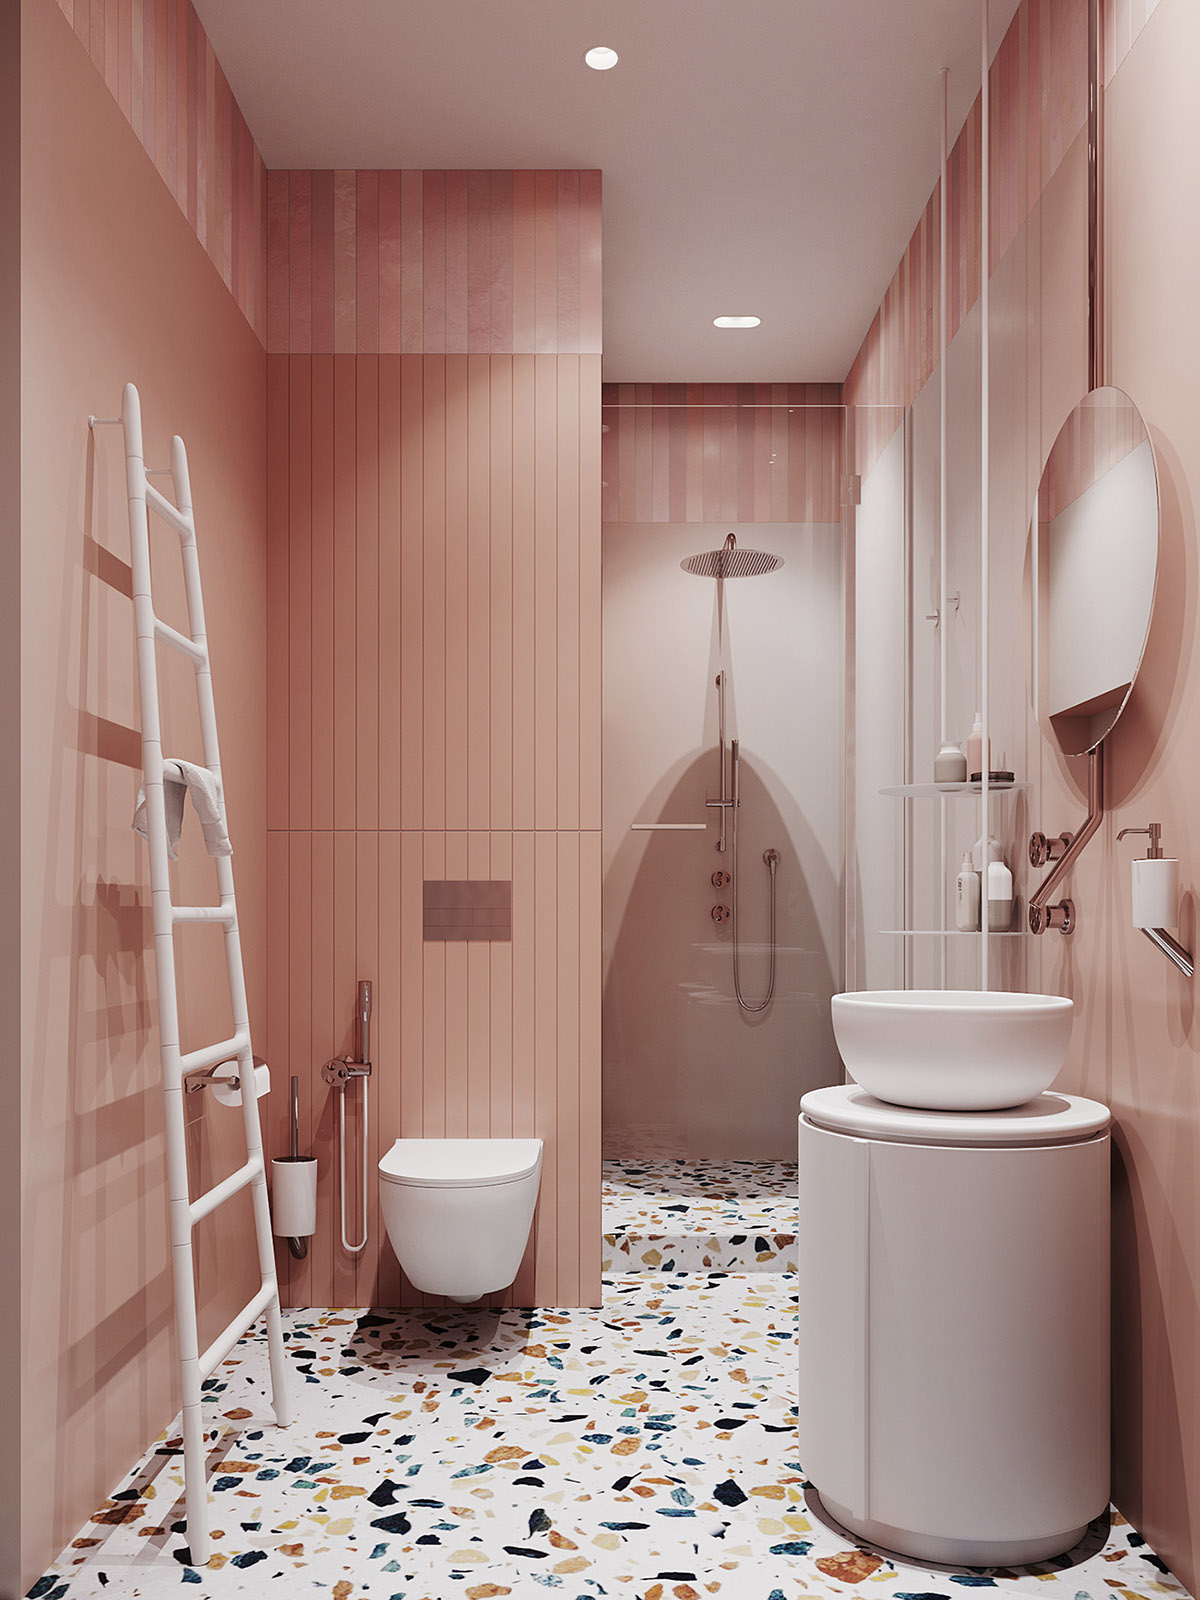 Hình ảnh toàn cảnh phòng tắm màu cam san hô với thang treo khăn màu trắng, phía trong là buồng tắm đứng